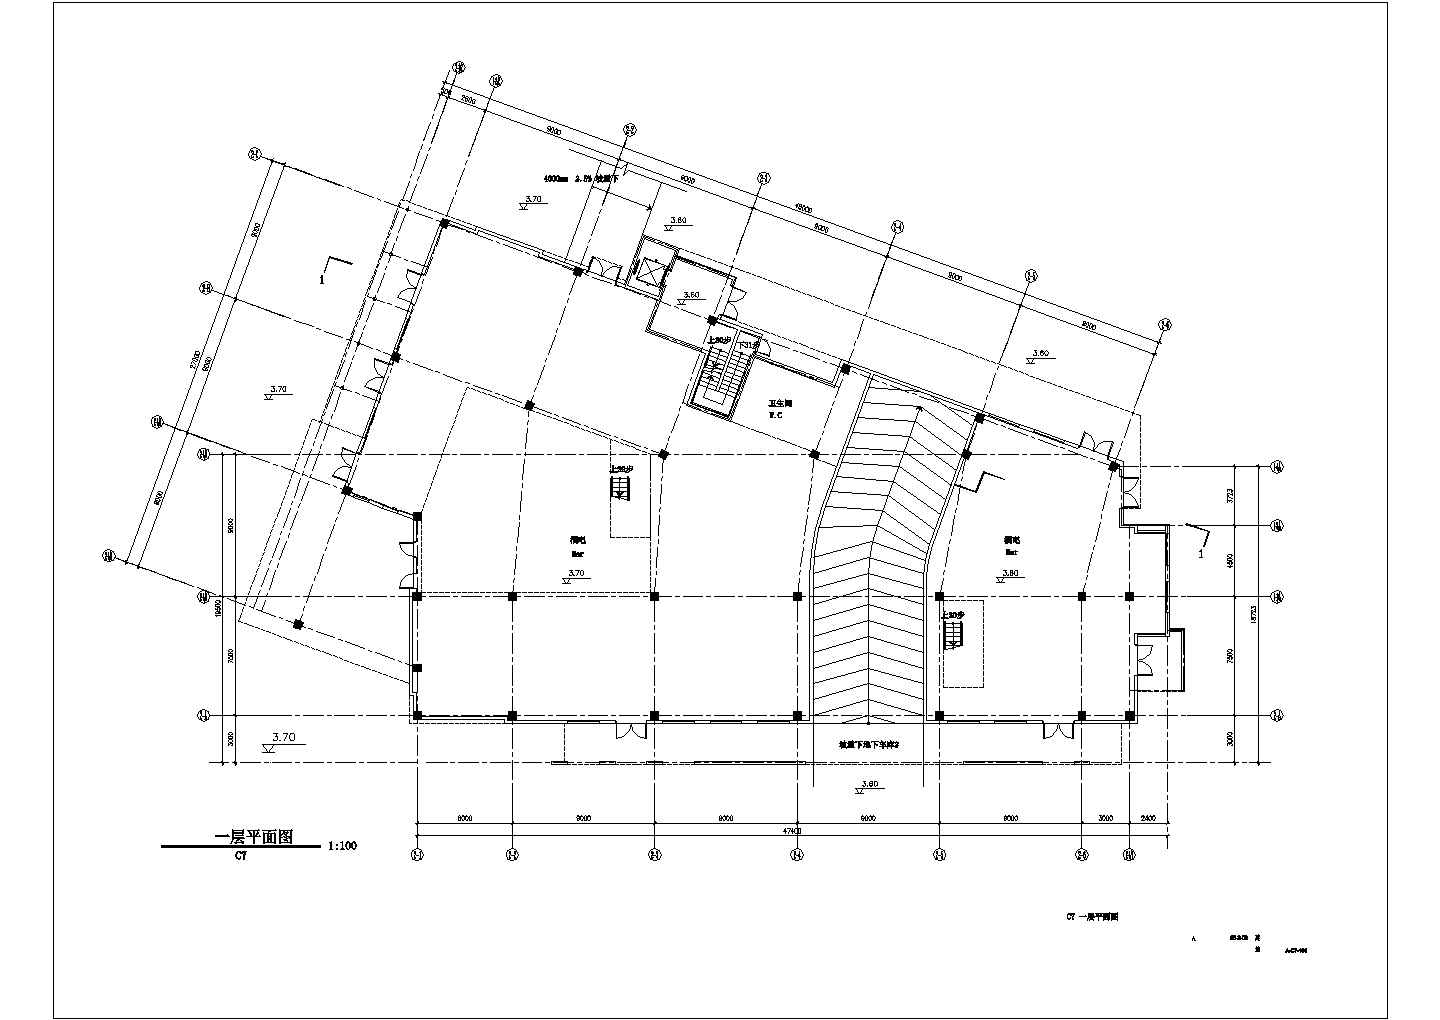 【苏州】某三层工业园区规划C7栋建筑扩初图